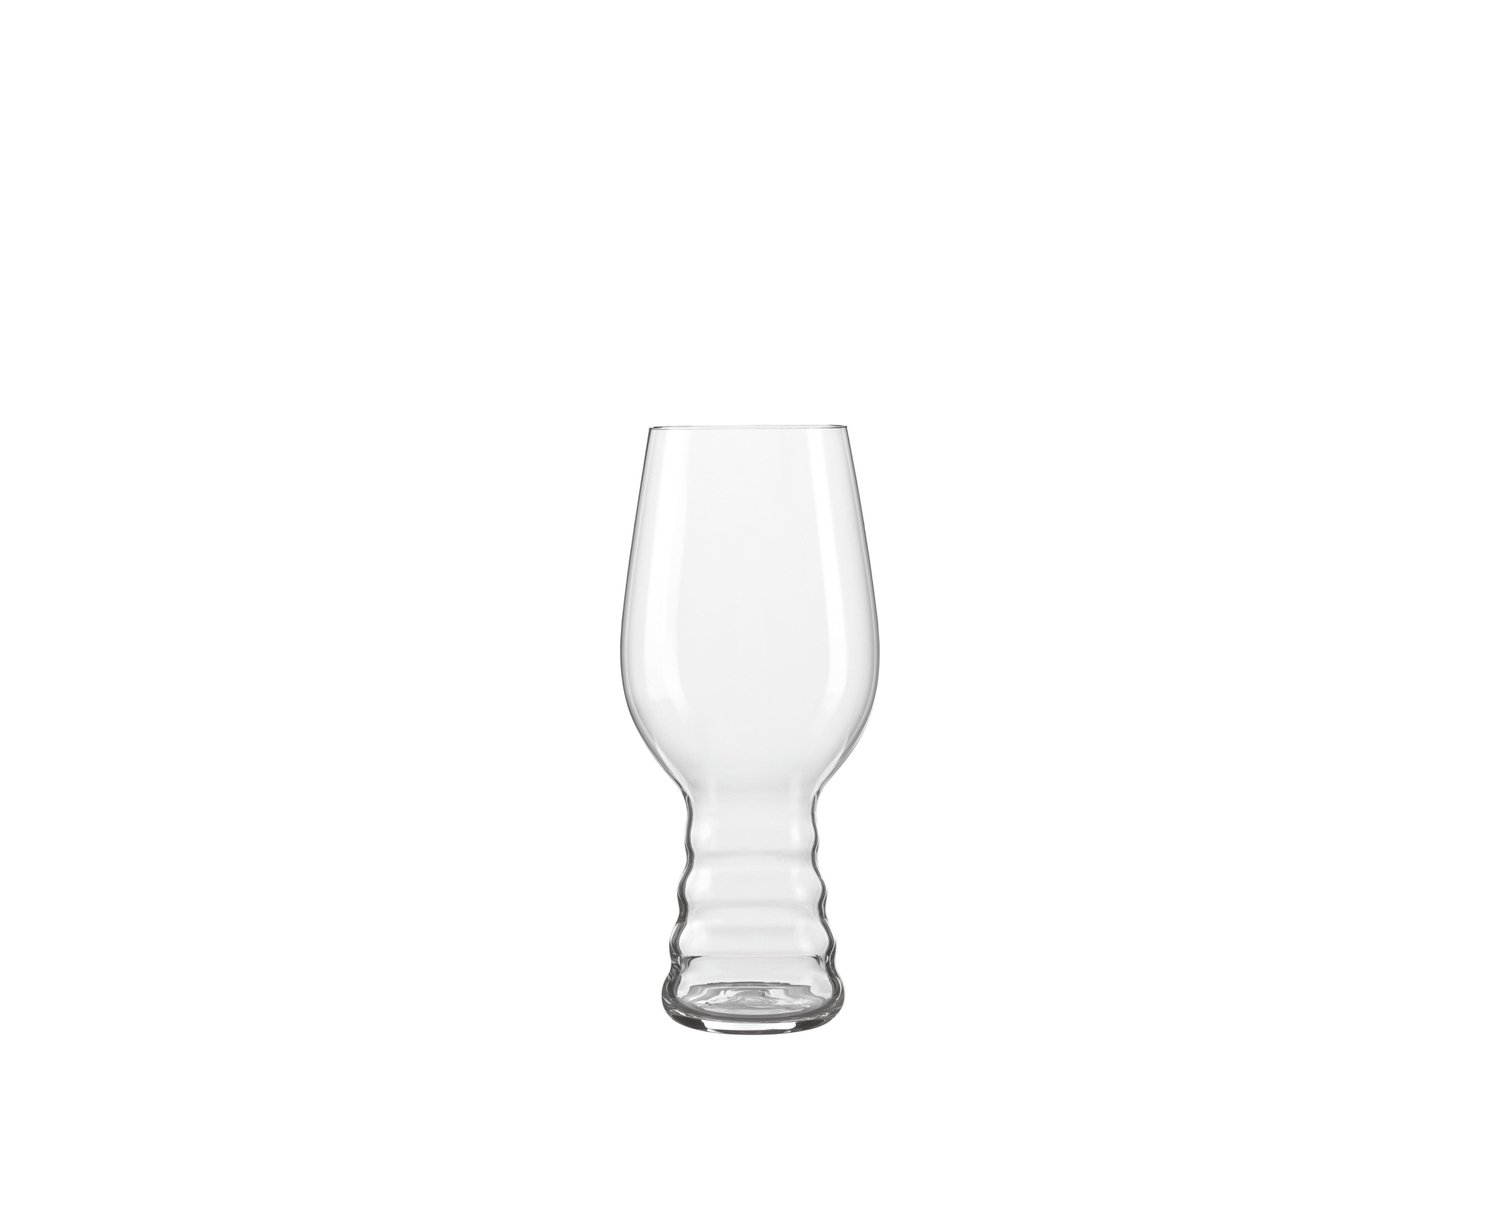  Spiegelau Craft Beer IPA Glass, Set of 1, European